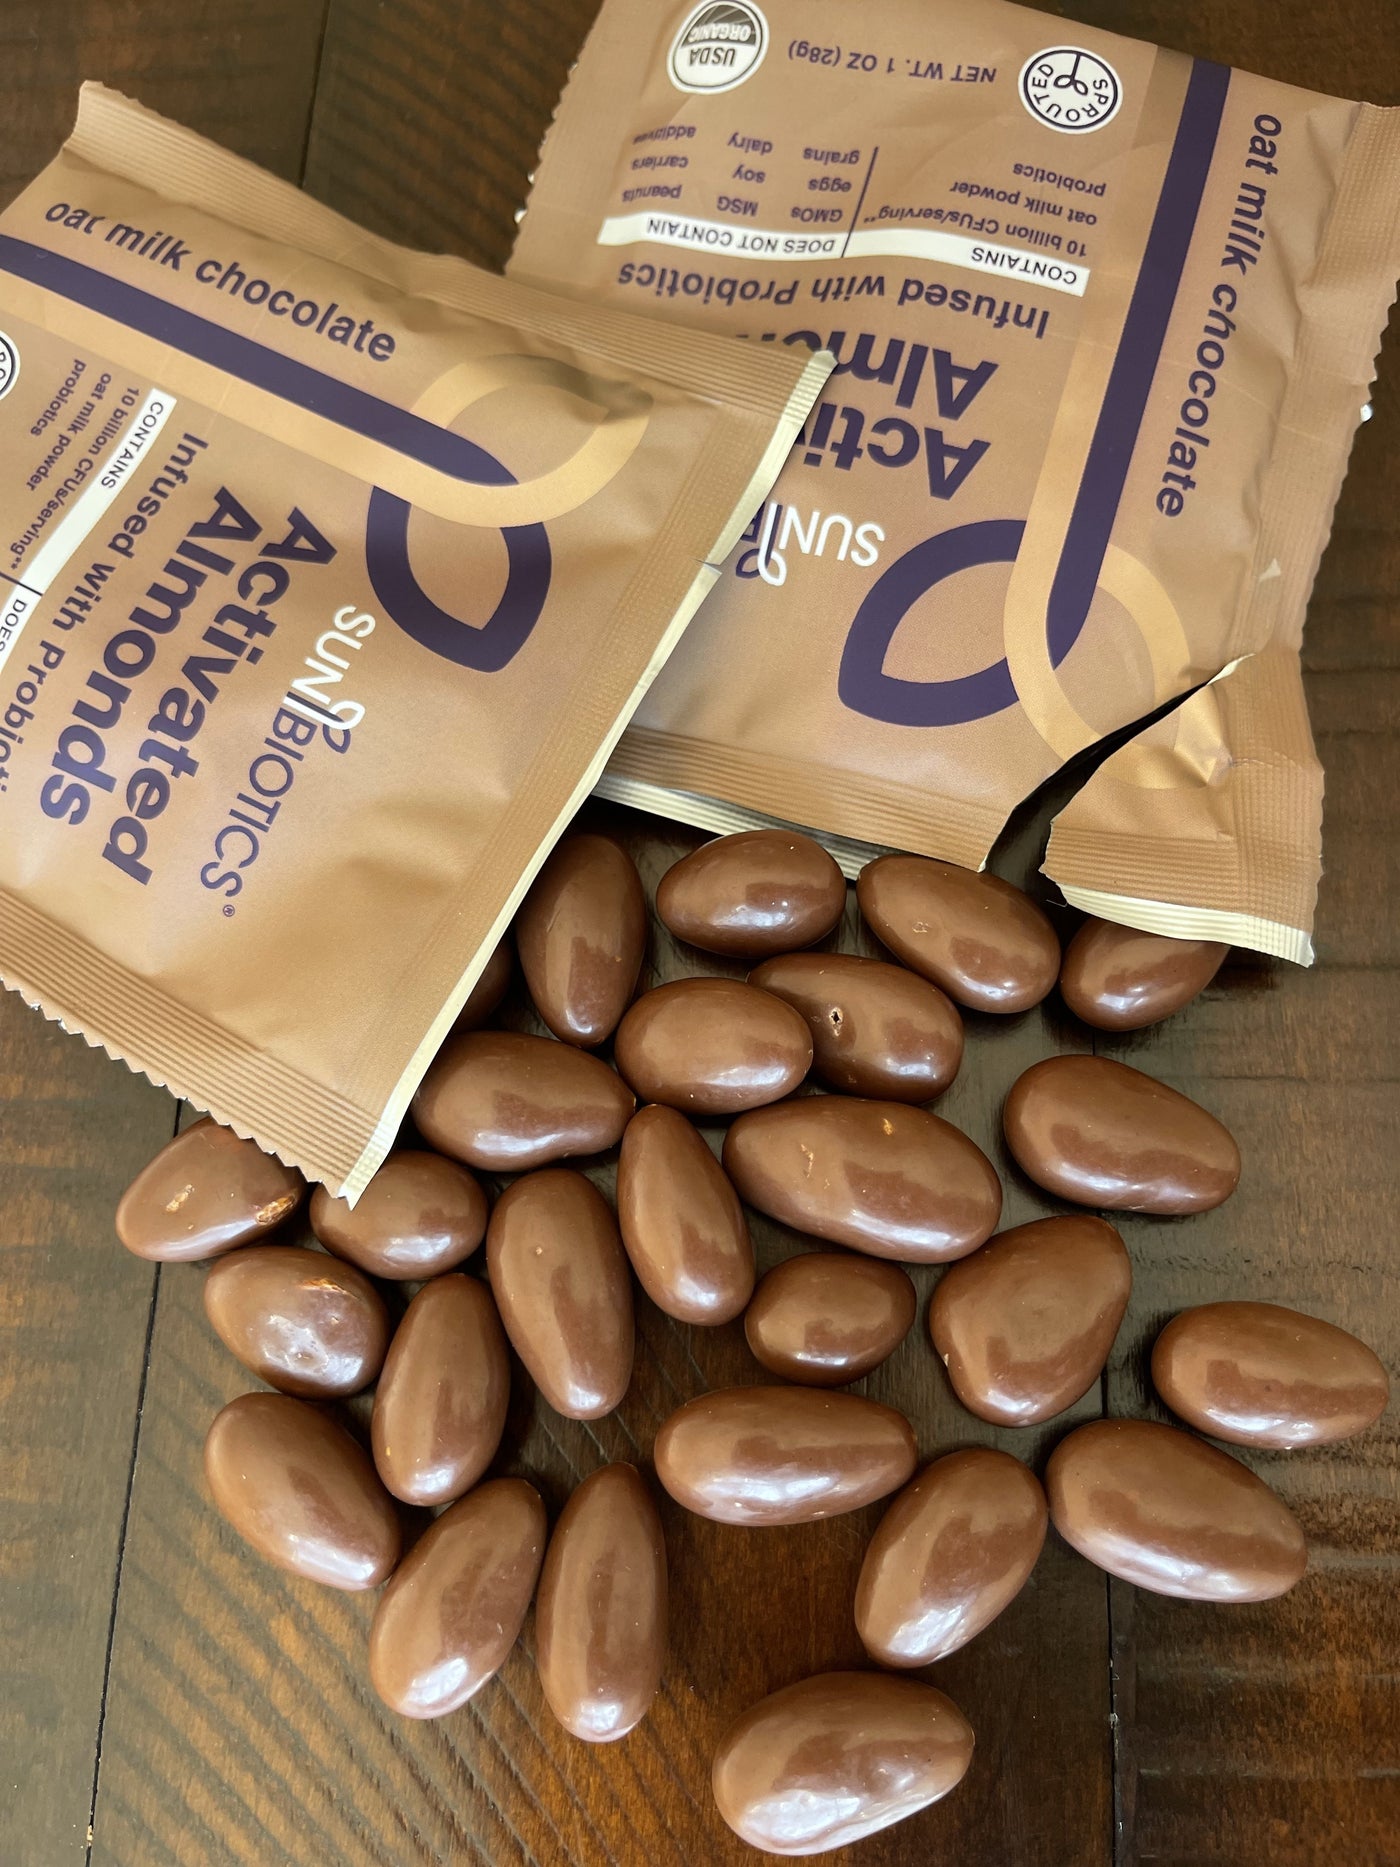 Sunbiotics probiotics almonds